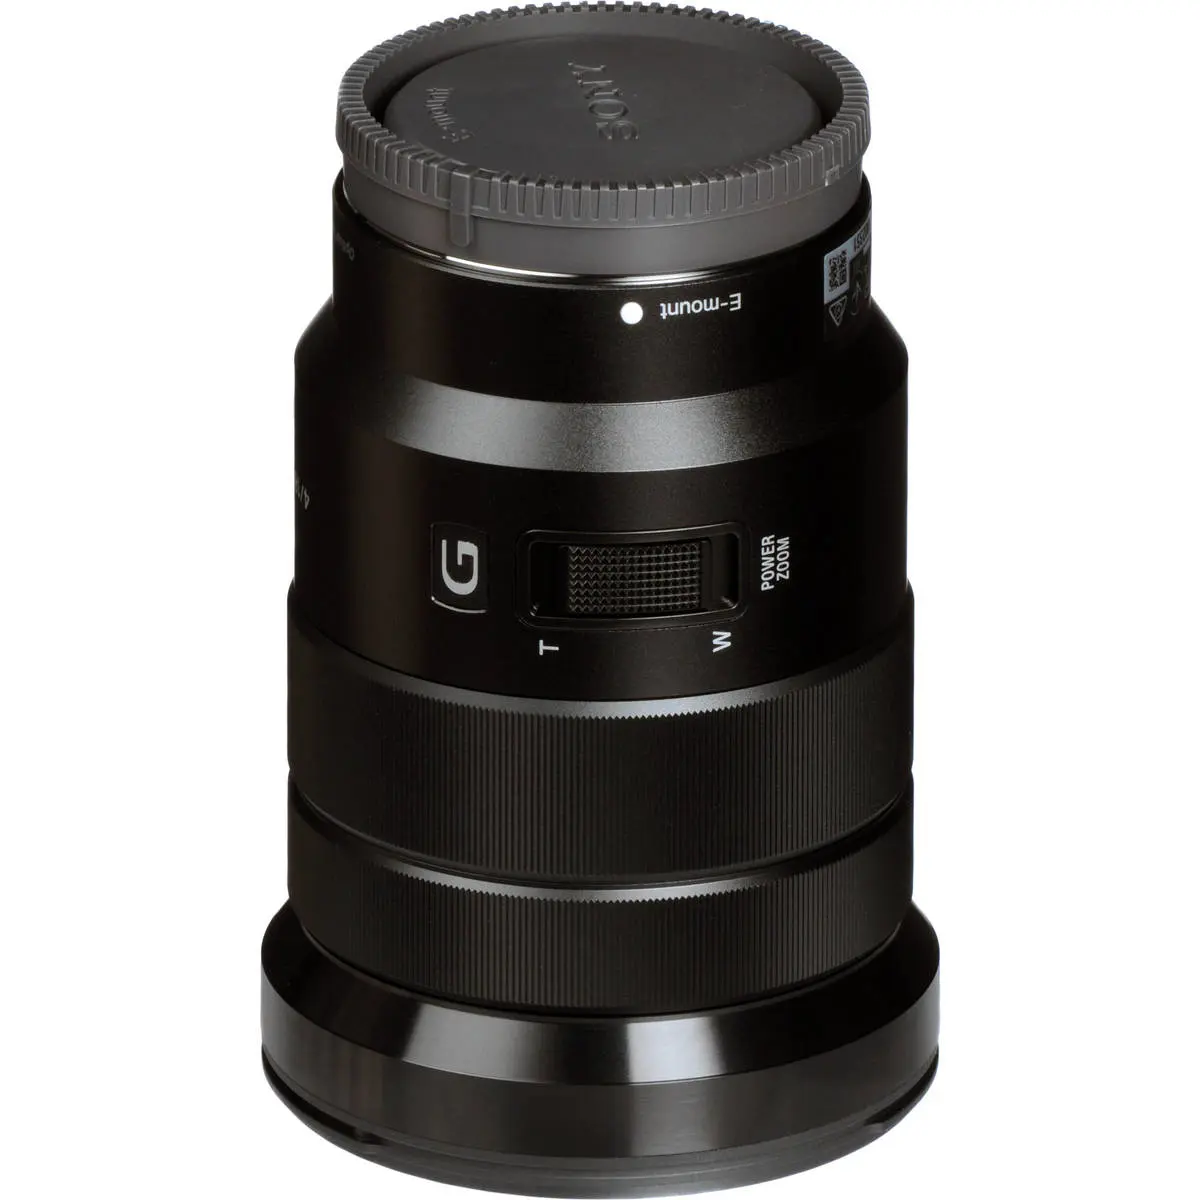 5. Sony E PZ 18-105mm F4 G OSS Lens SELP18105G E-Mount APS-C Format